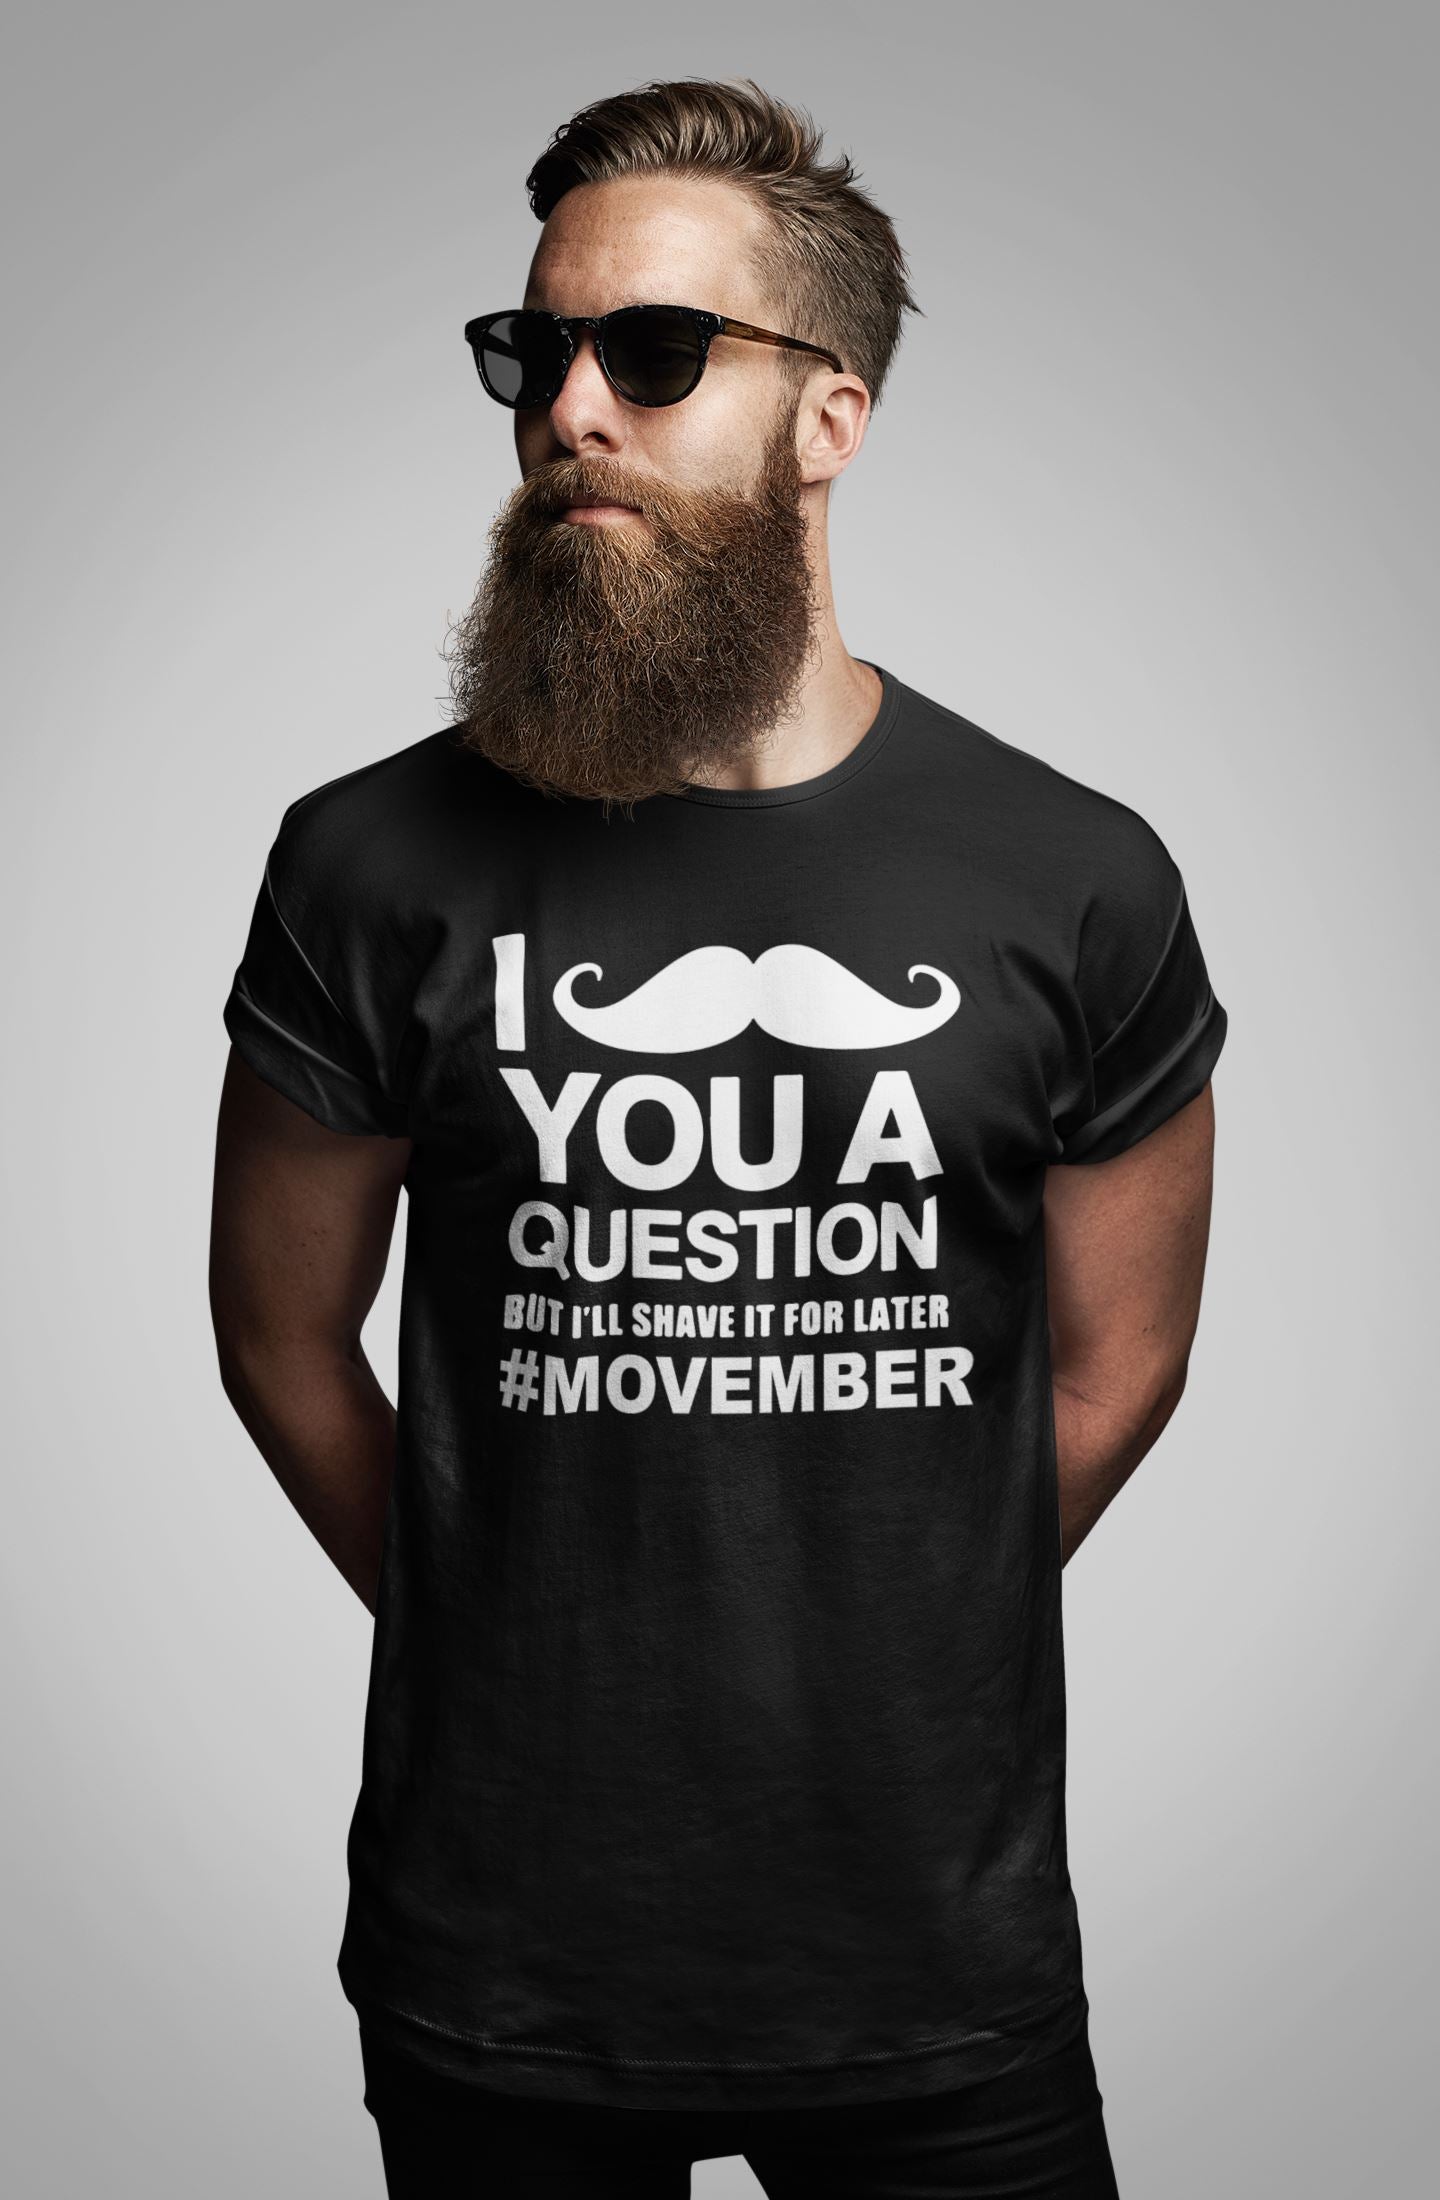 Movember Awareness T-shirt